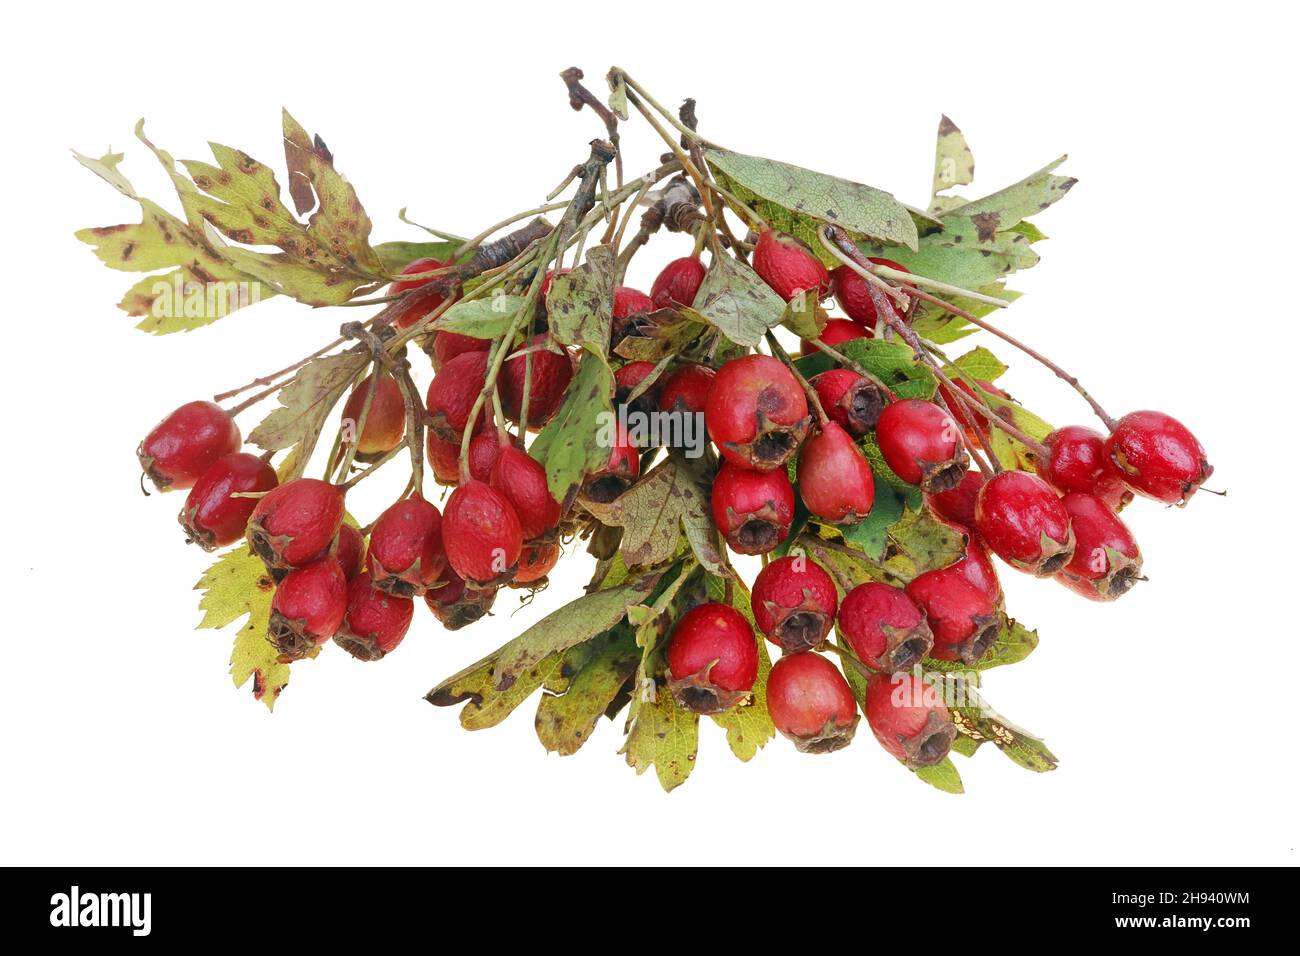 Manojo de bayas rojas de espino silvestre maduras en ramitas con manchas en hojas. Aislado en blanco macro-estudio Foto de stock